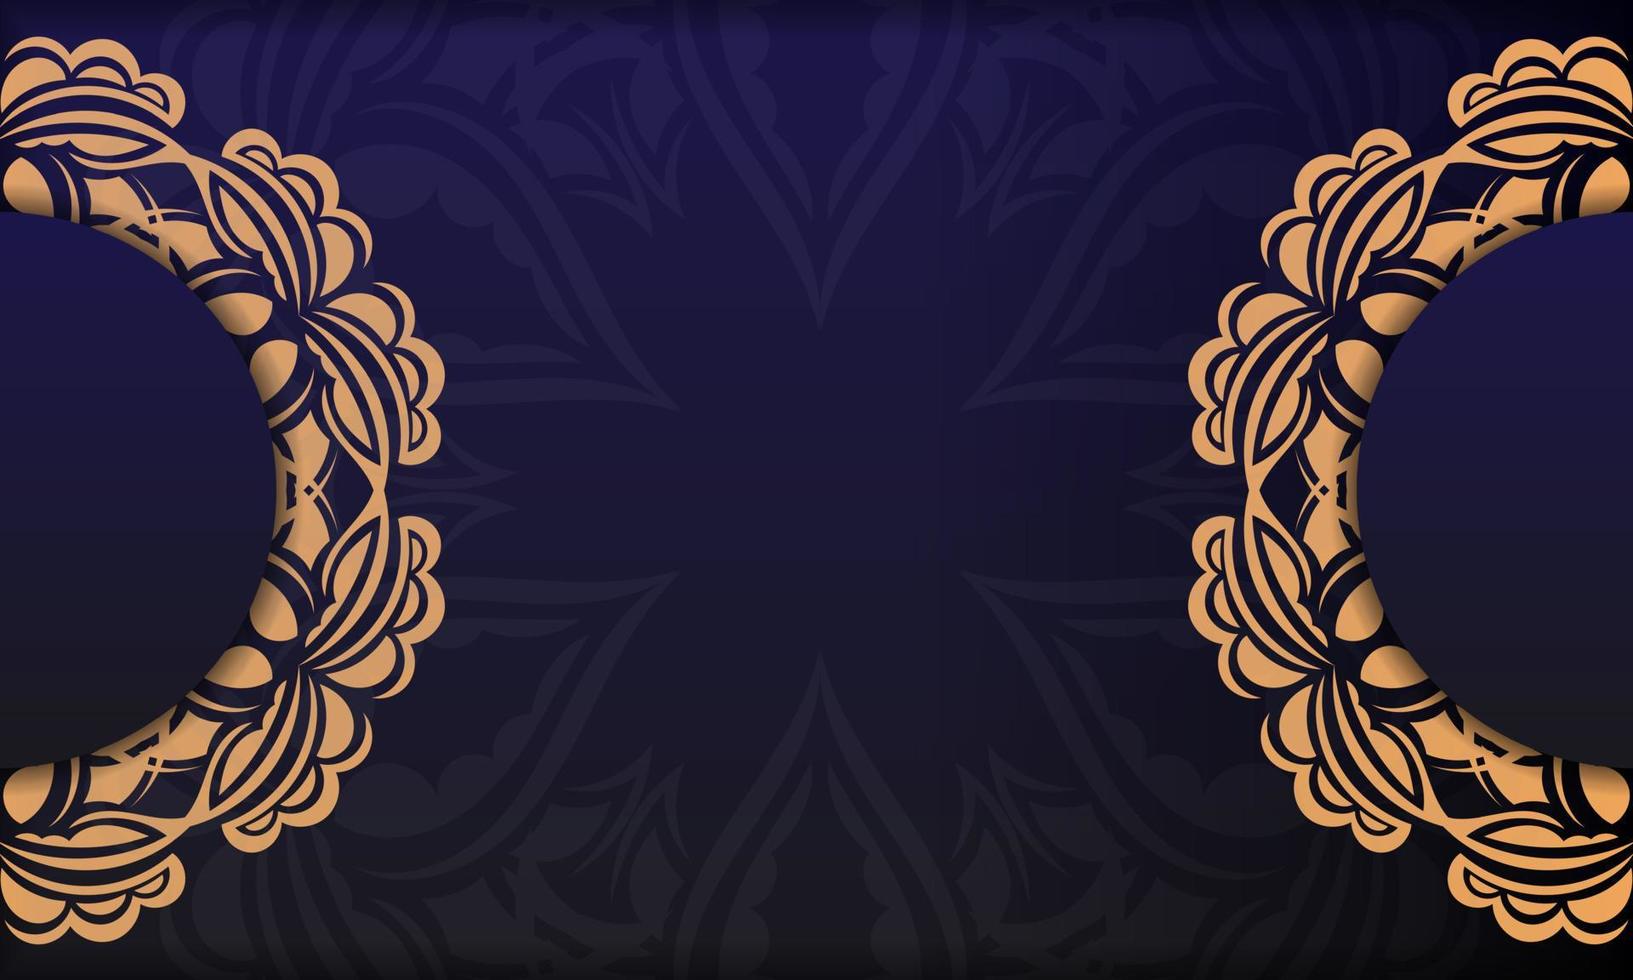 conception de cartes d'invitation avec des ornements luxueux. fond de vecteur violet avec des ornements de luxe grecs et place pour votre conception.